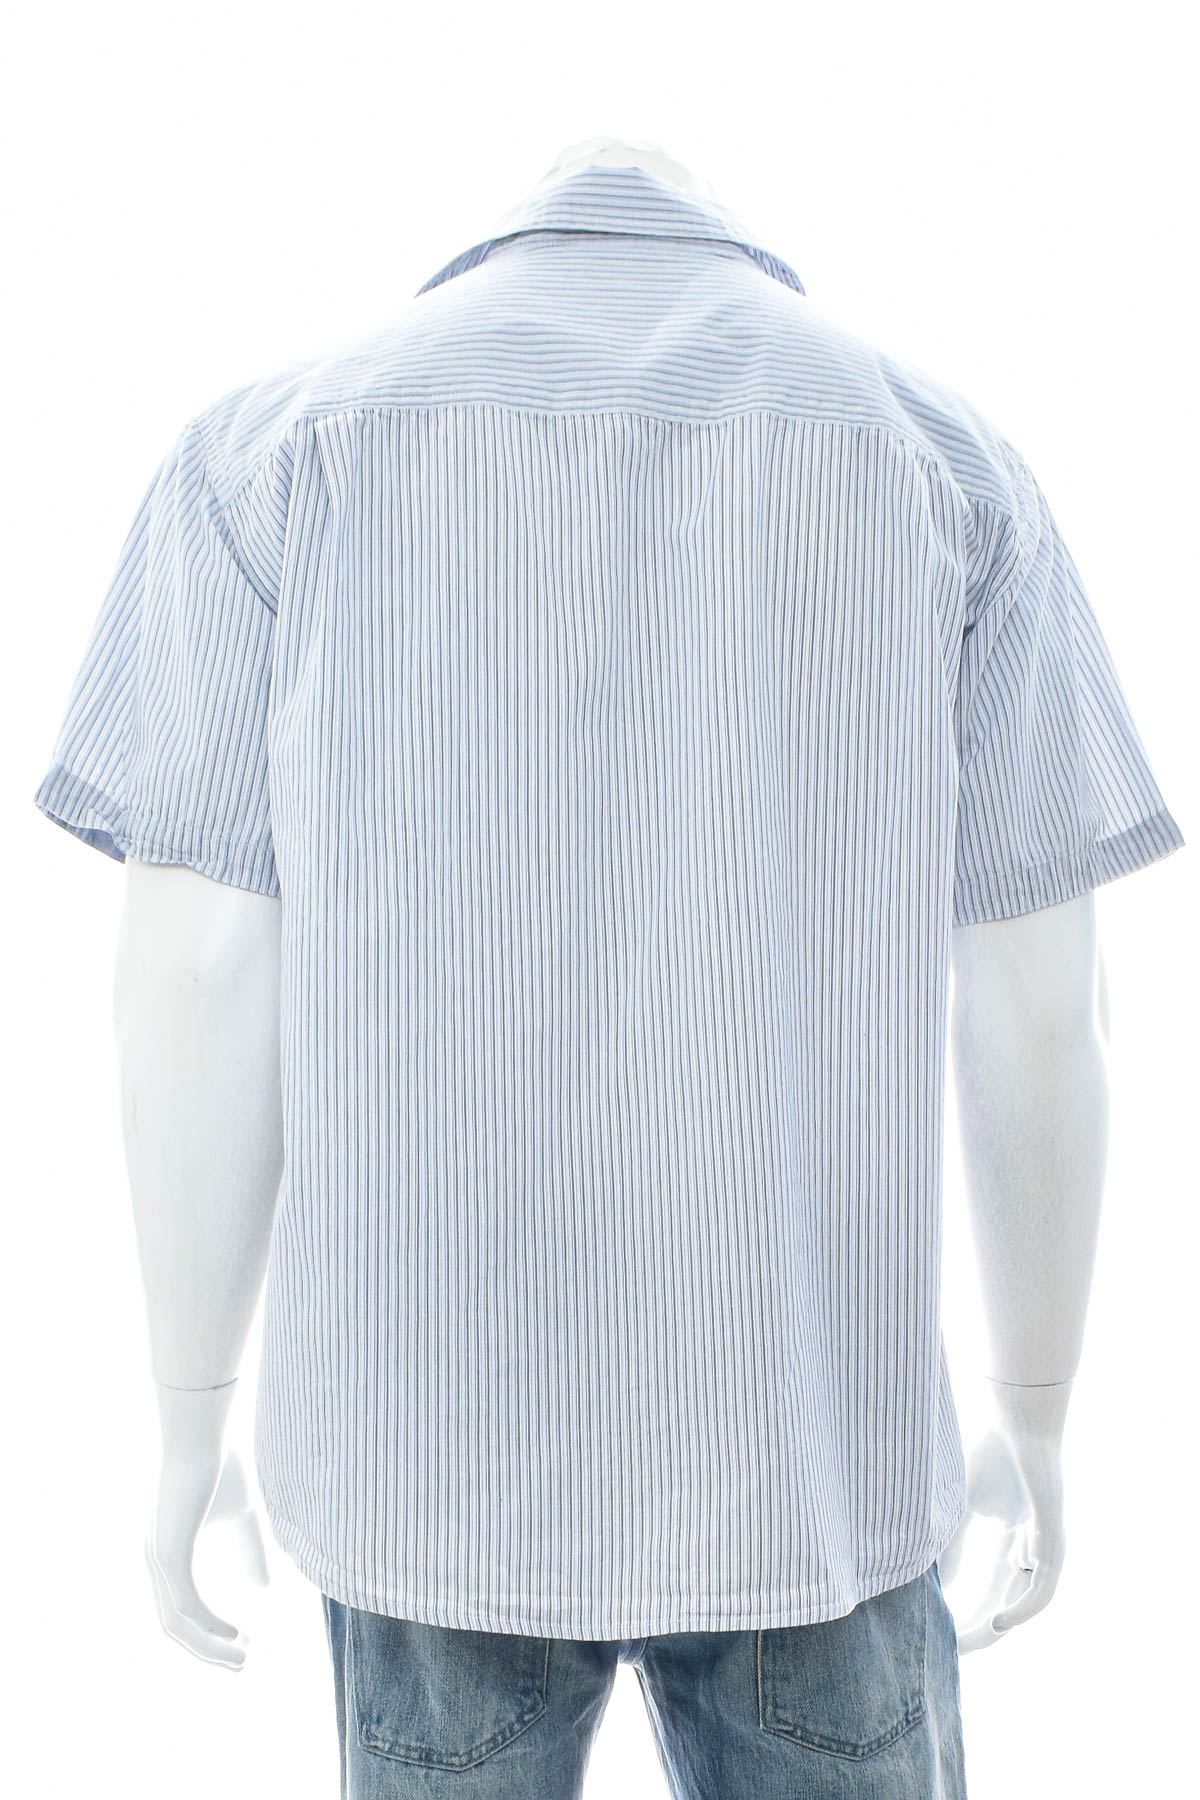 Ανδρικό πουκάμισο - ATLAS for MEN - 1